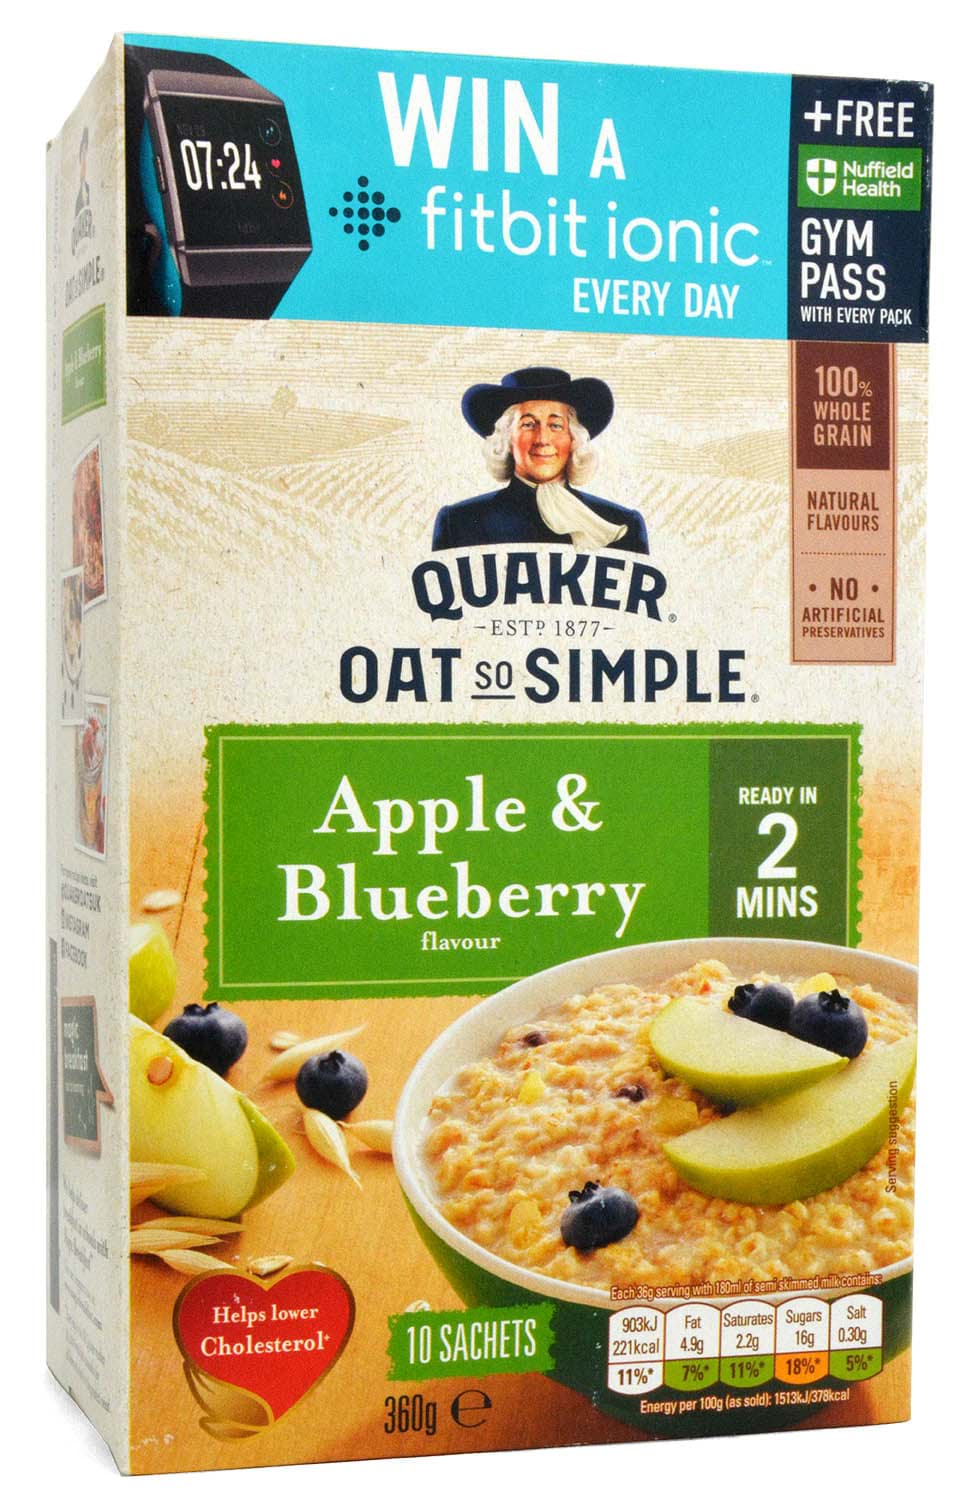 Quaker Golden Syrup Porridge To Go bei uns online kaufen